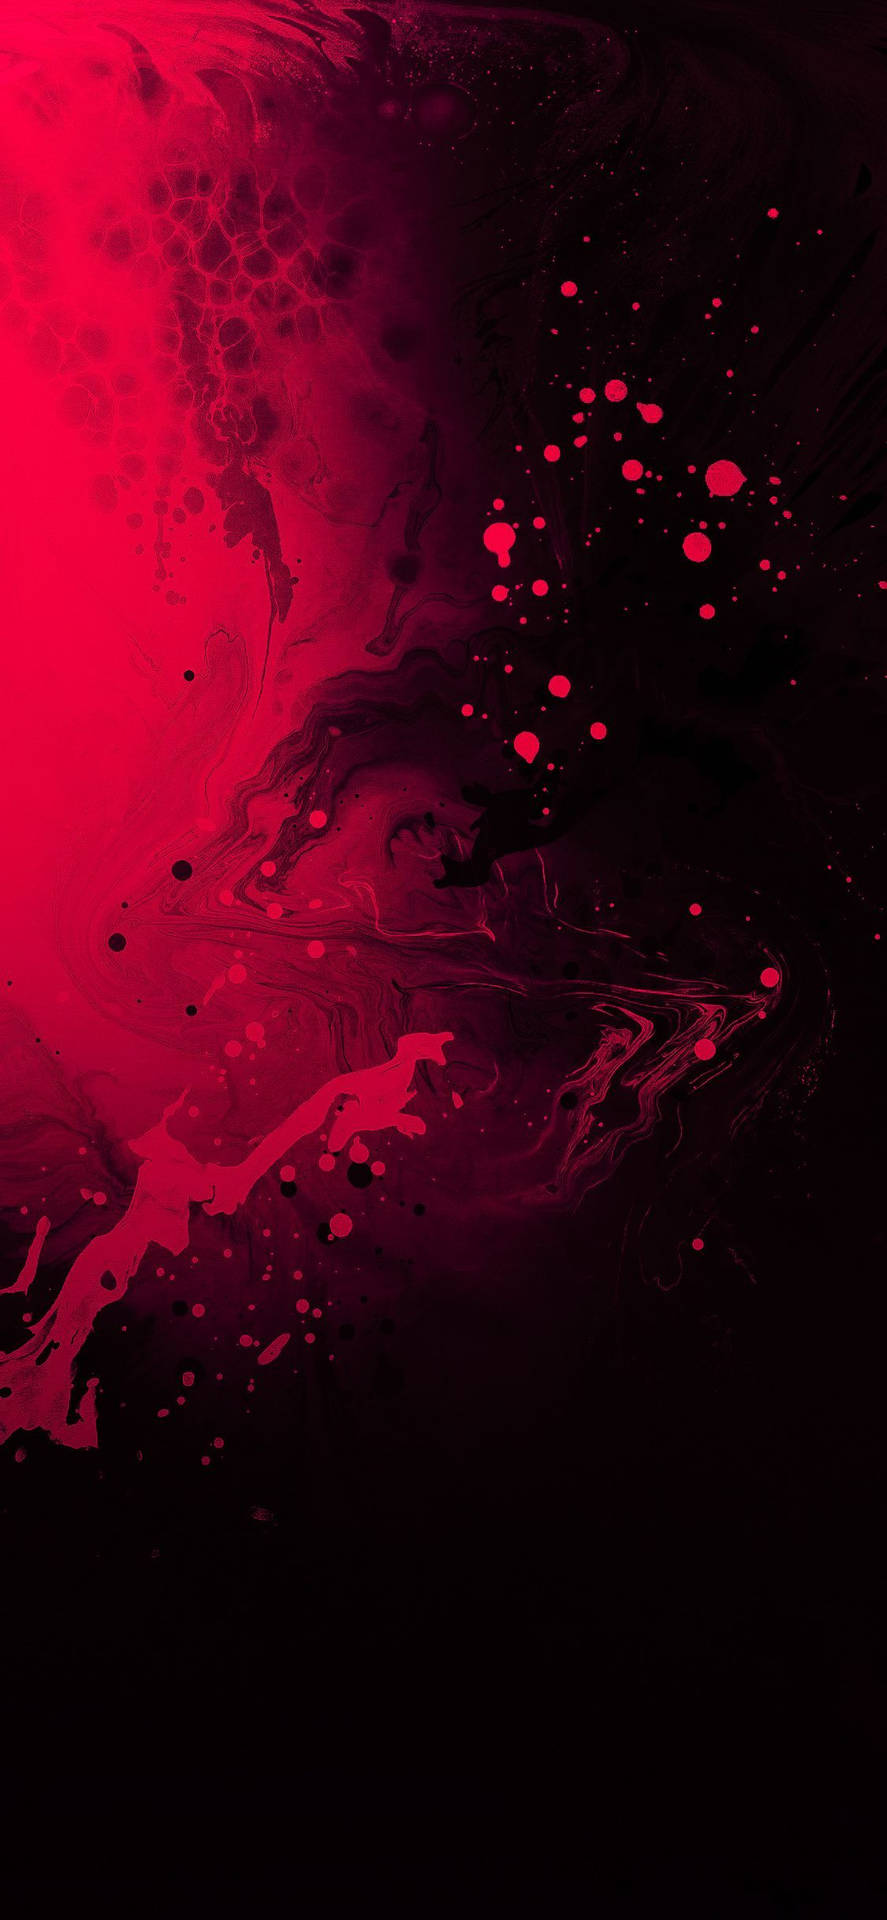 Red Liquid Mix iPhone 12 Wallpaper